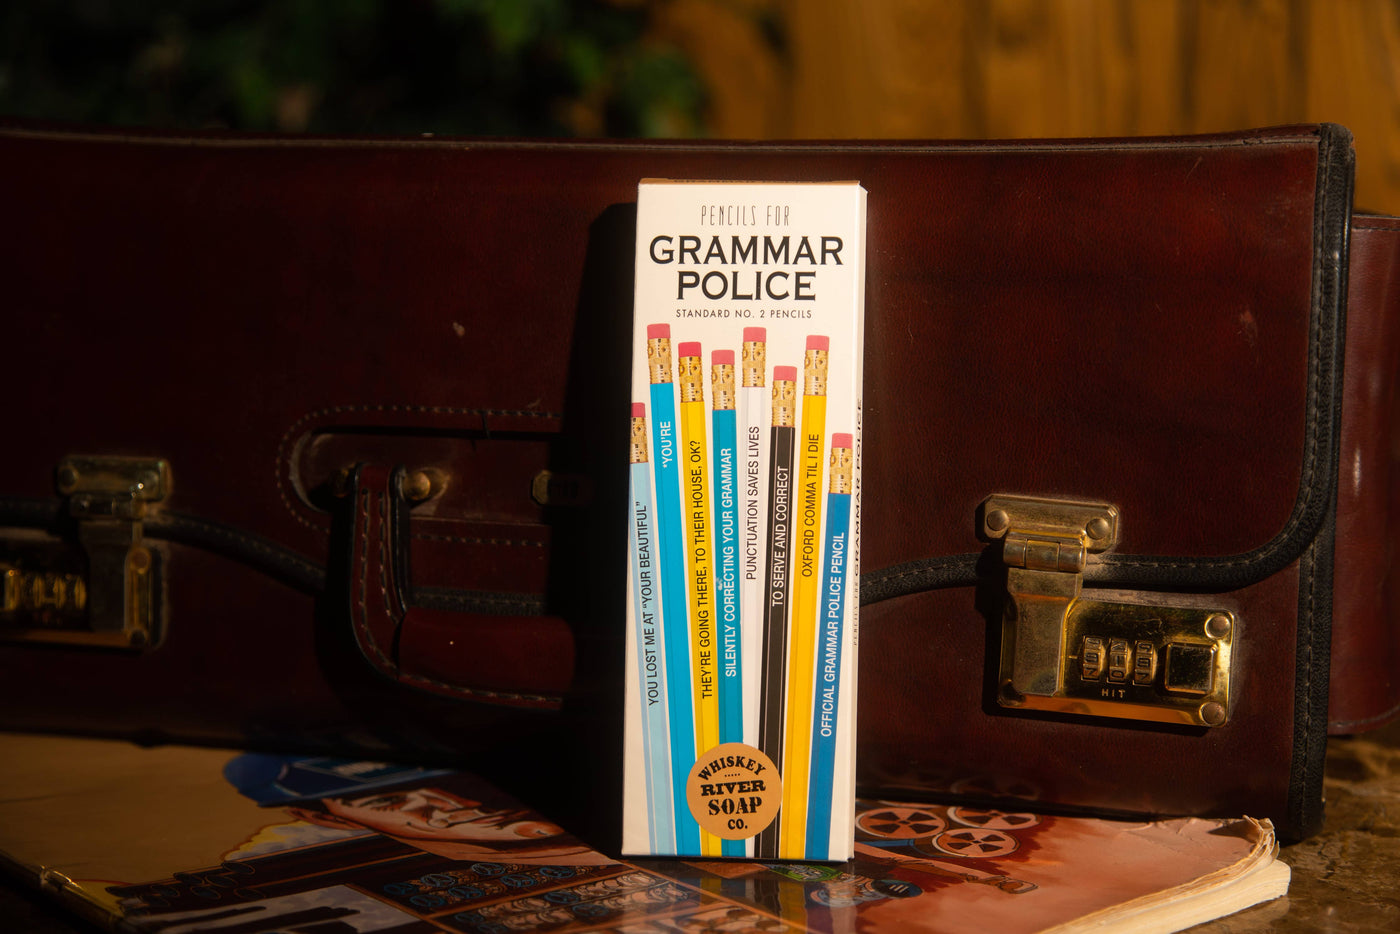 Pencils for Grammar Police Original Package | Funny Pencils